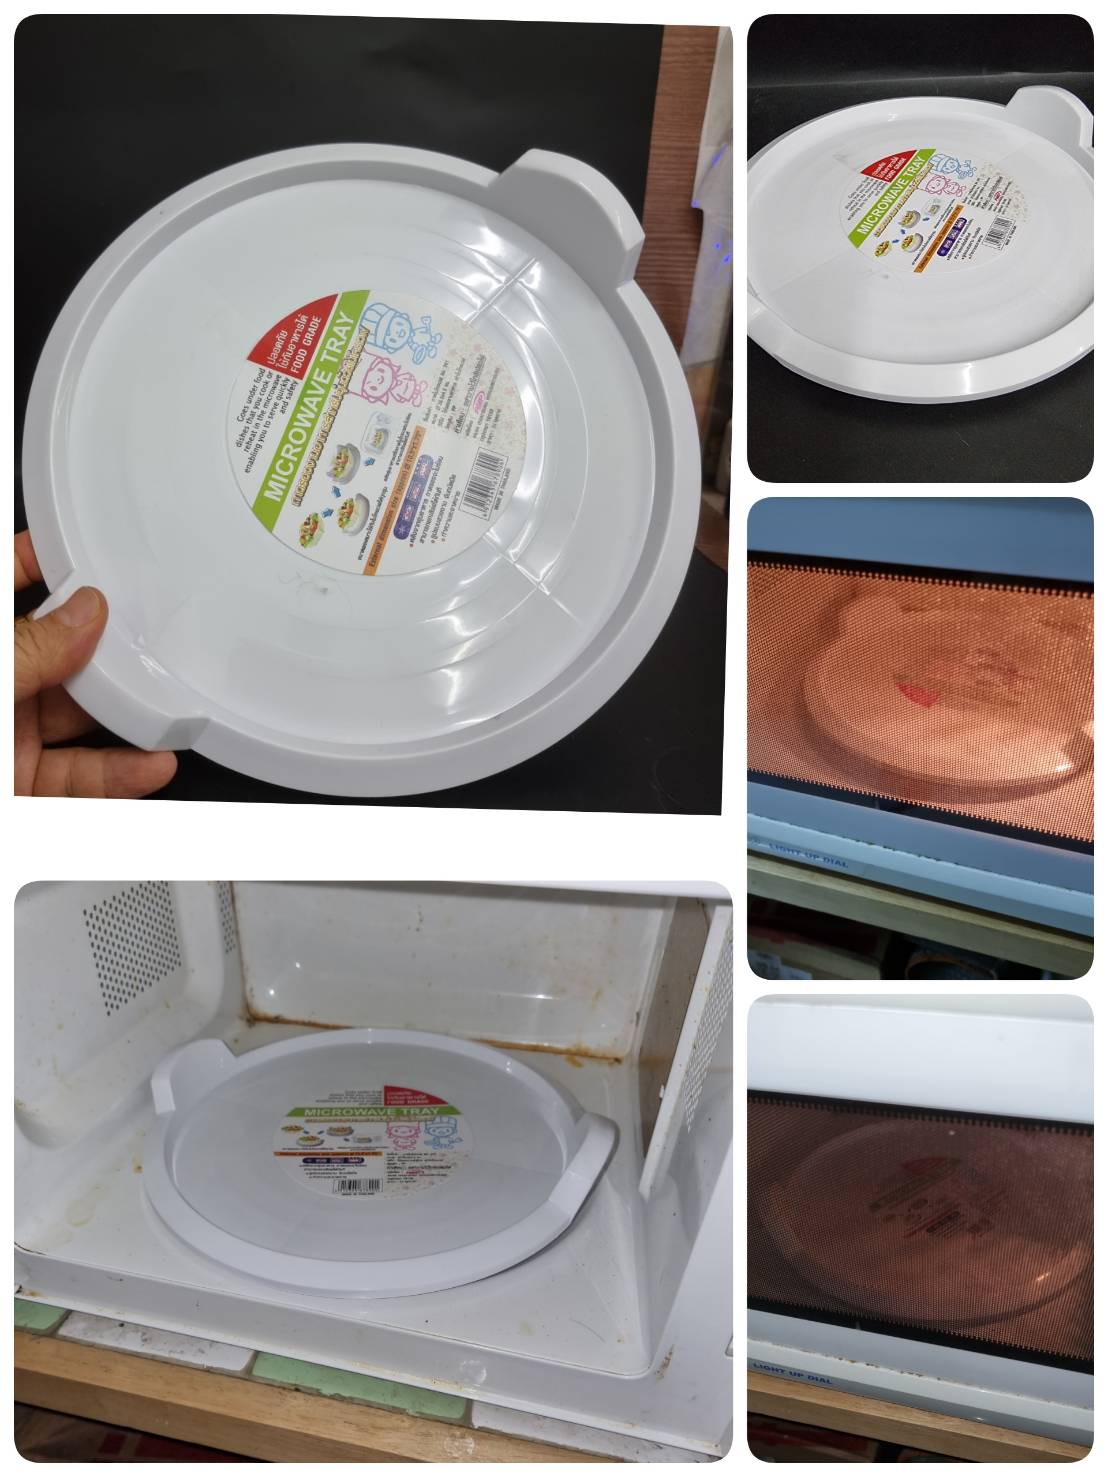 ถาดรองจานอาหารสำหรับอุ่นด้วยเตาไมโครเวฟ Microwave Tray พร้อมที่จับยกเสริฟได้ทันที ทำความสะอาดได้ง่าย ใช้ได้กับเตาฯทุกรุ่น